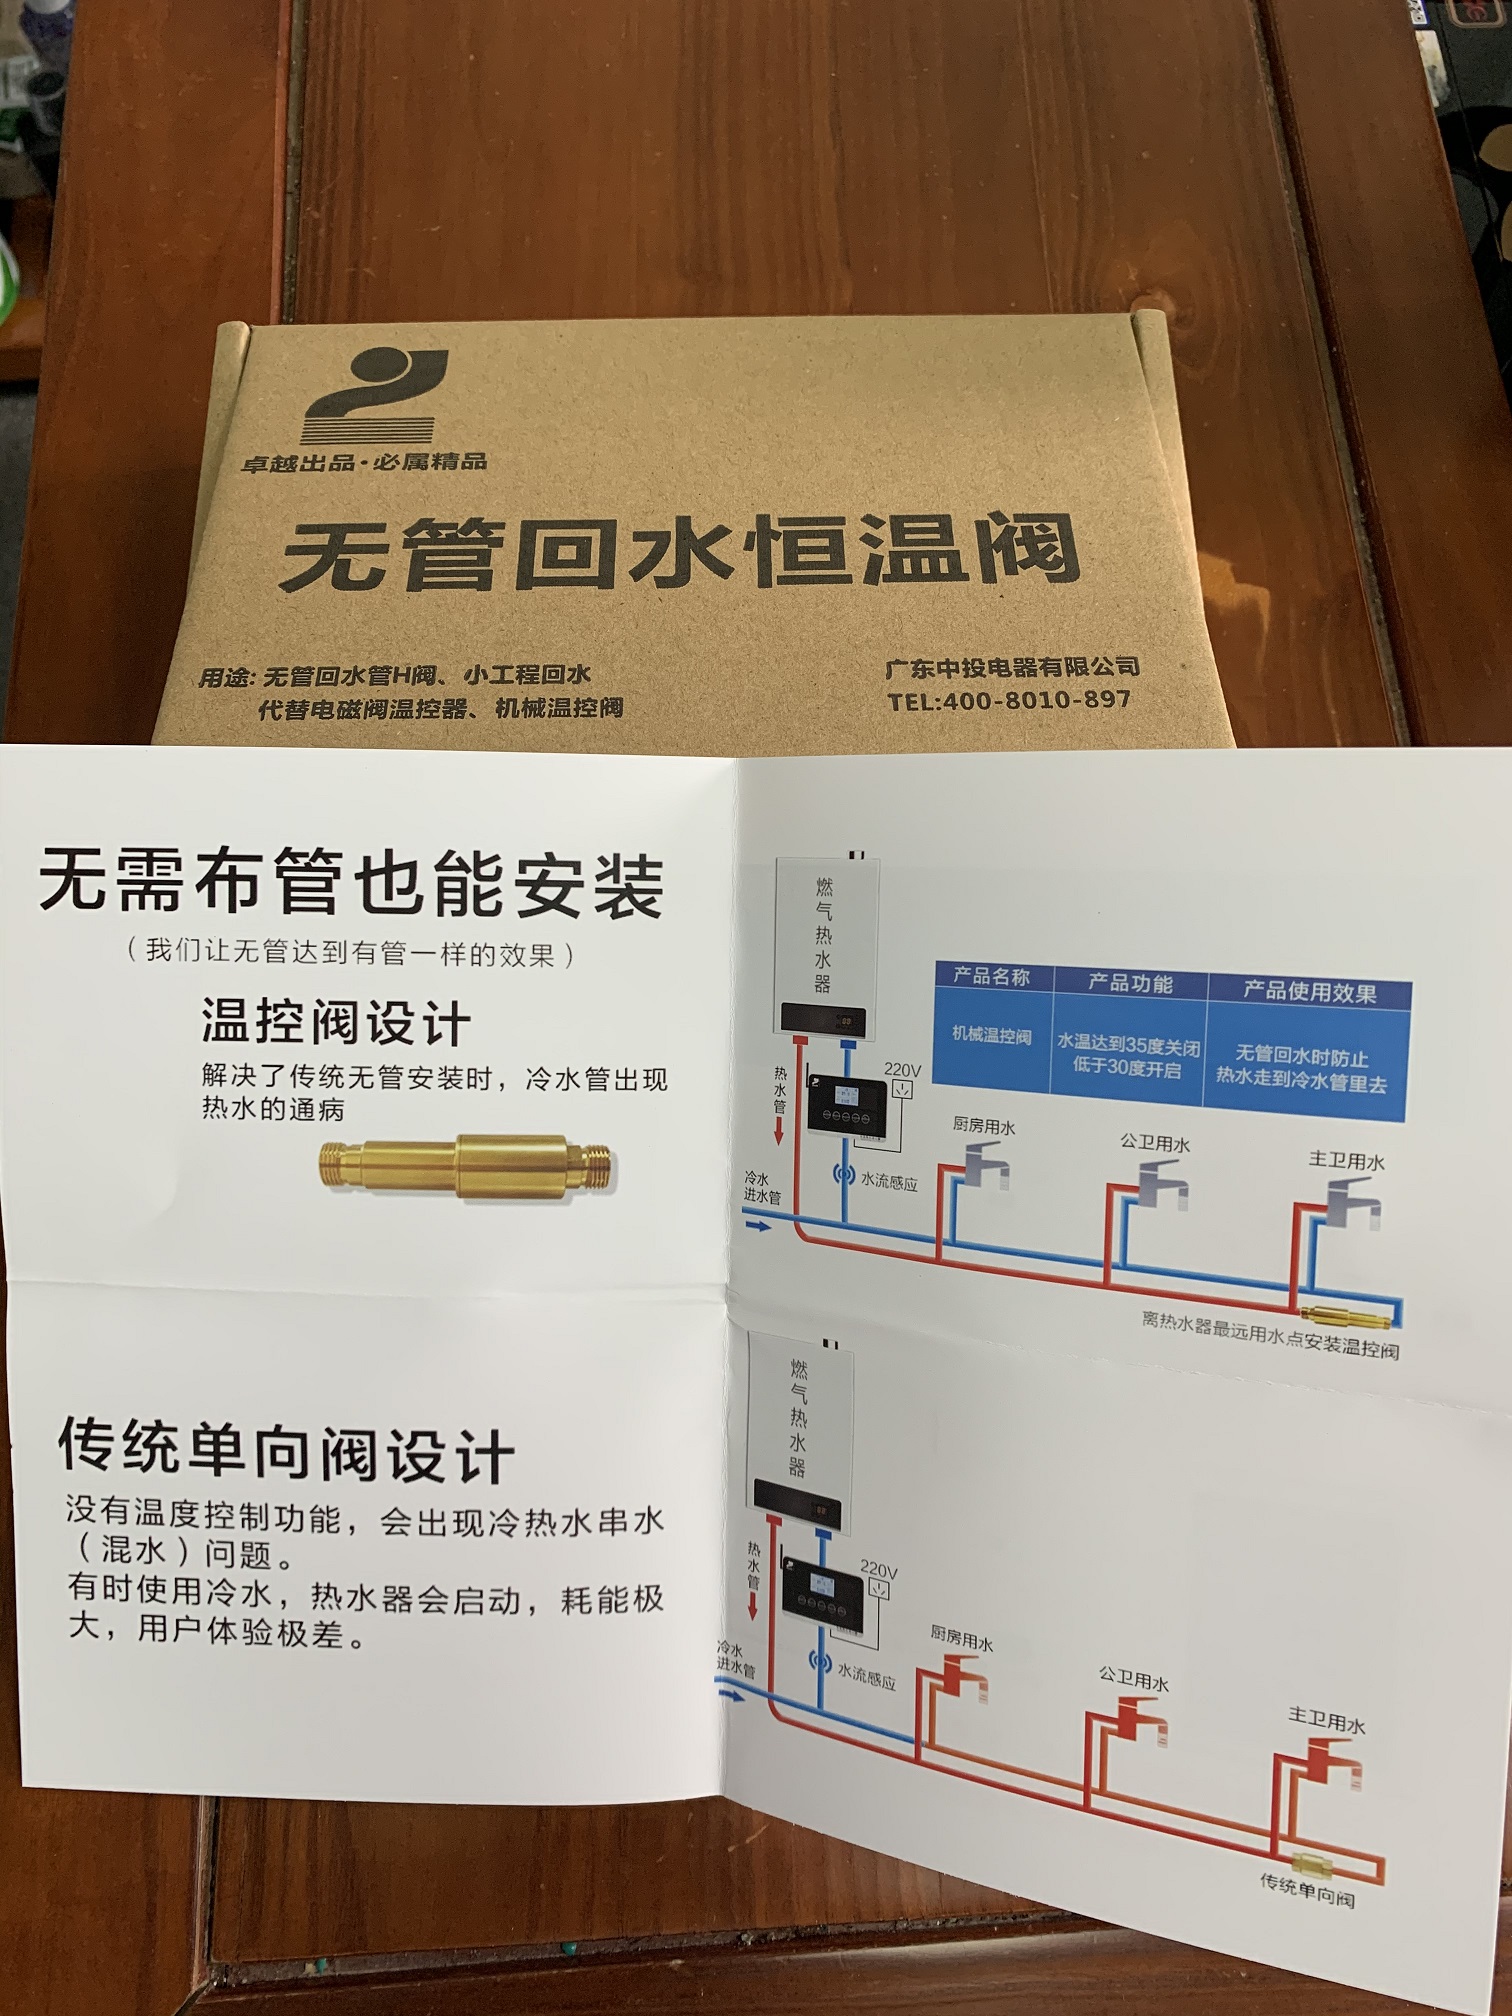 热水循环系统招代理-广东中投电器有限公司